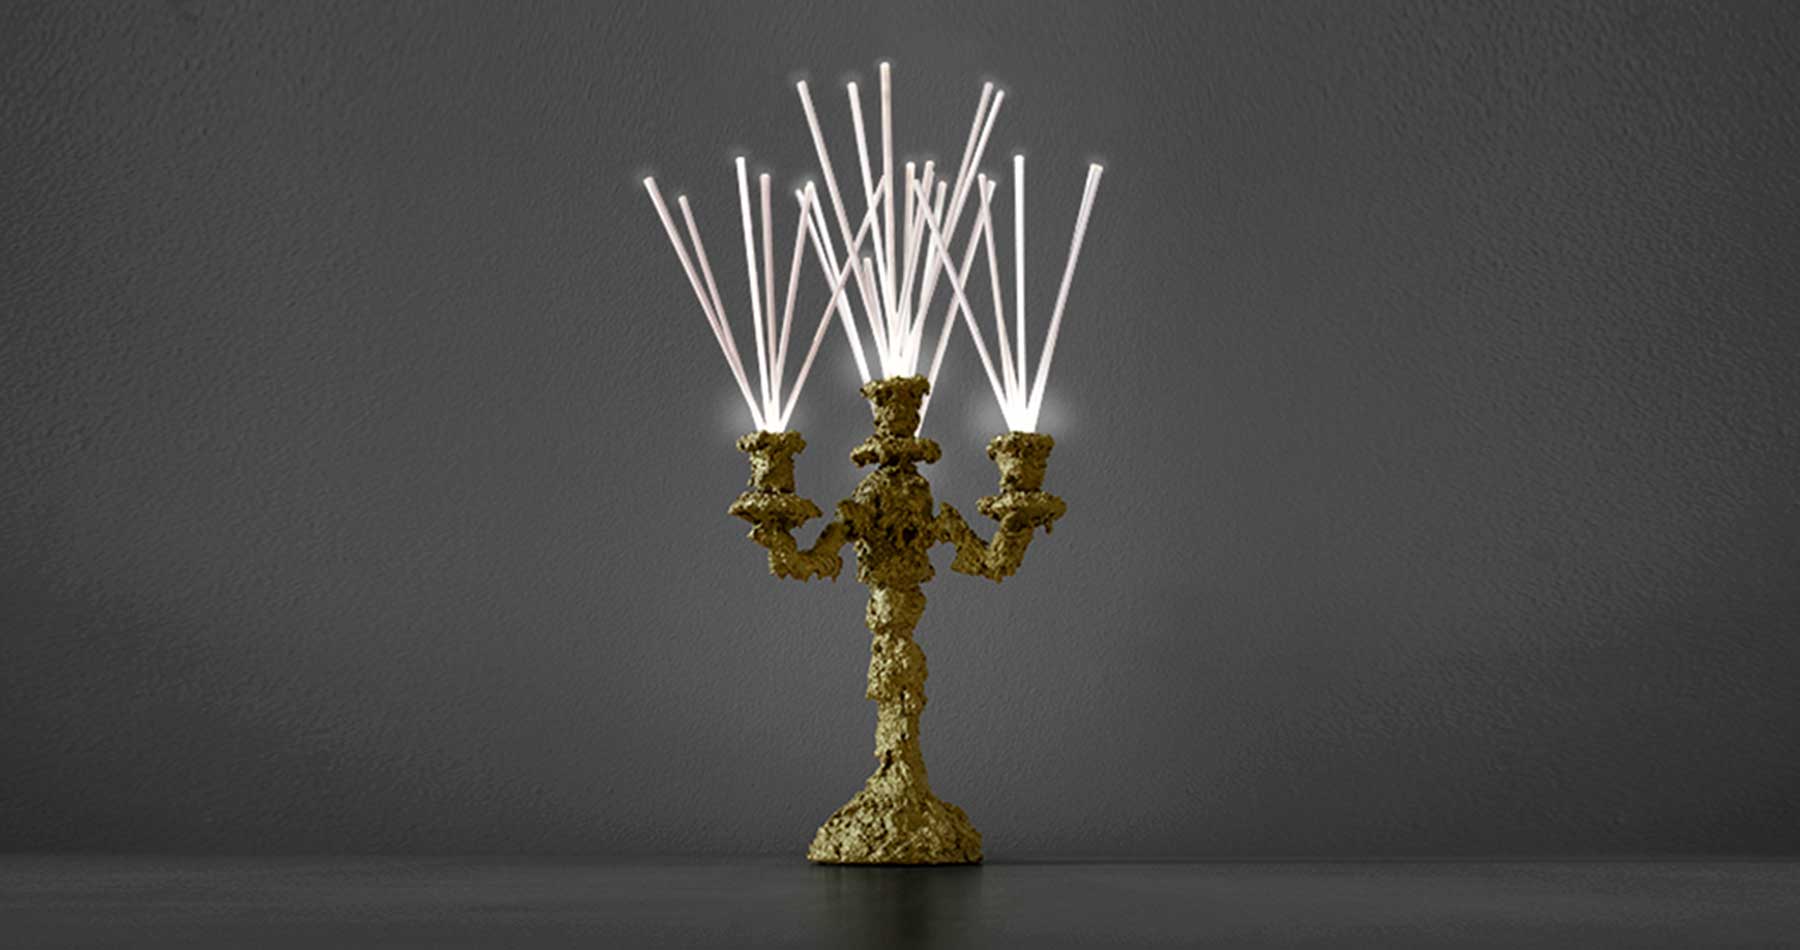 Lamp Secret light, gold, photo 2, design by Guerraz, production by LuceControCorrente